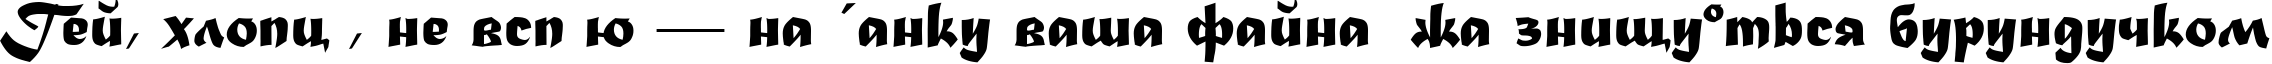 Пример написания шрифтом Madera TYGRA текста на украинском